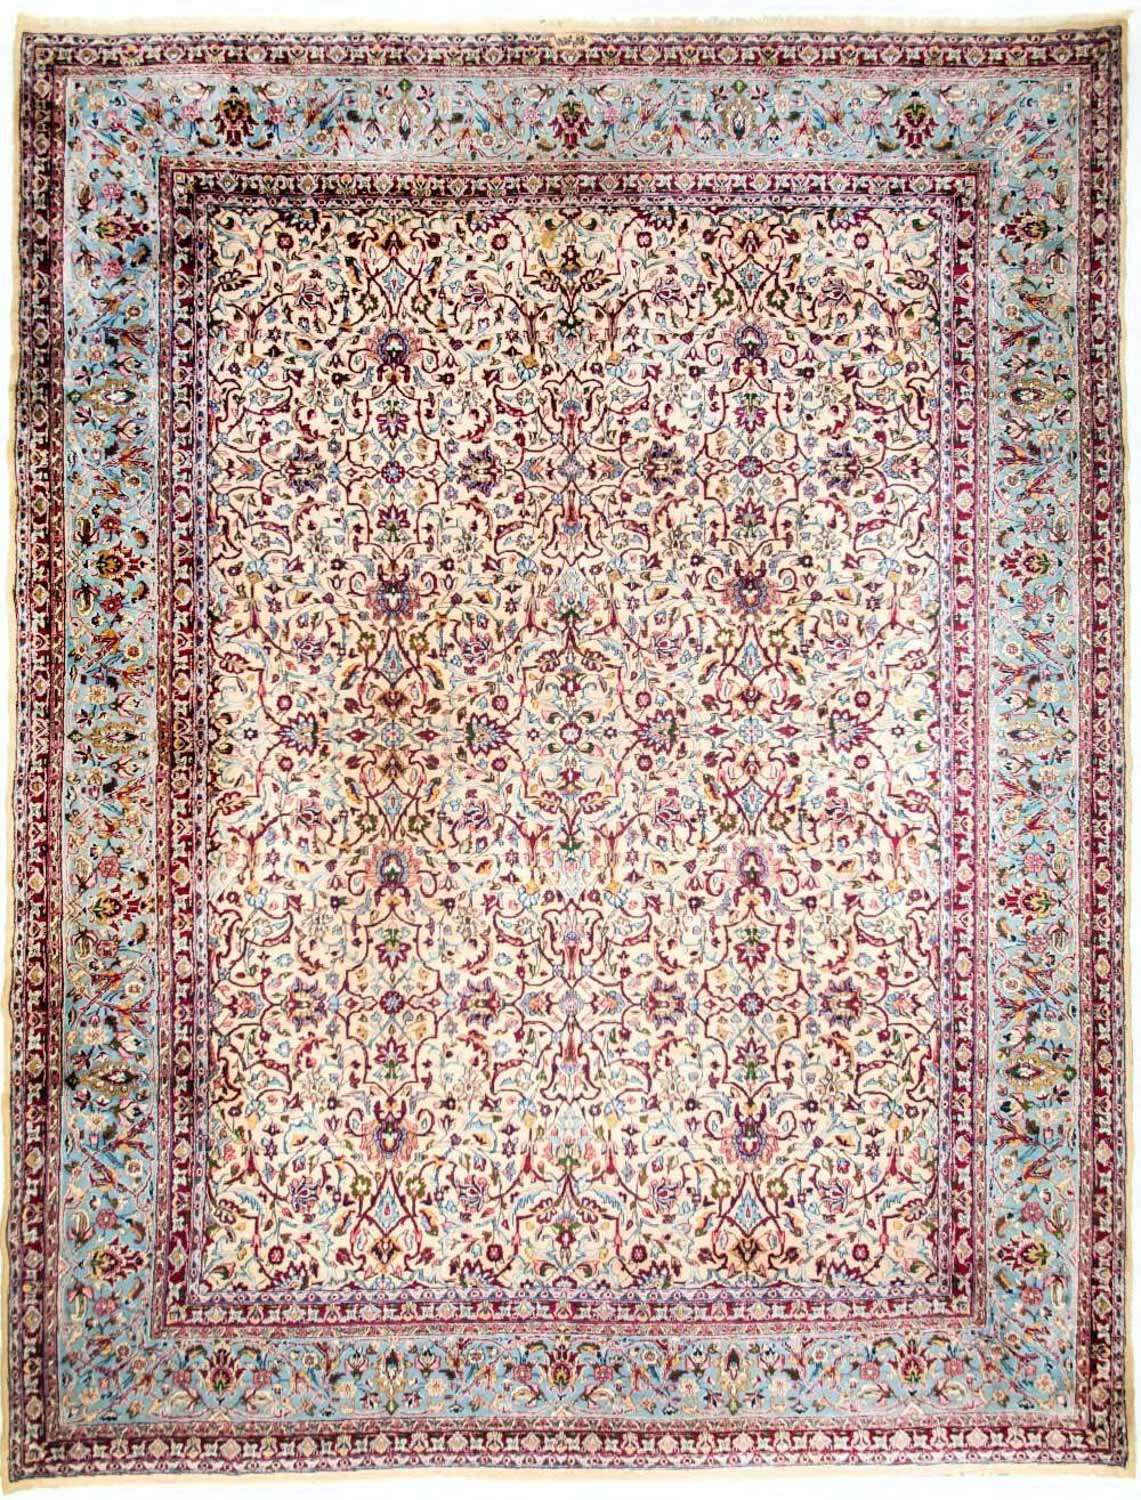 Persisk teppe - klassisk - 420 x 316 cm - beige